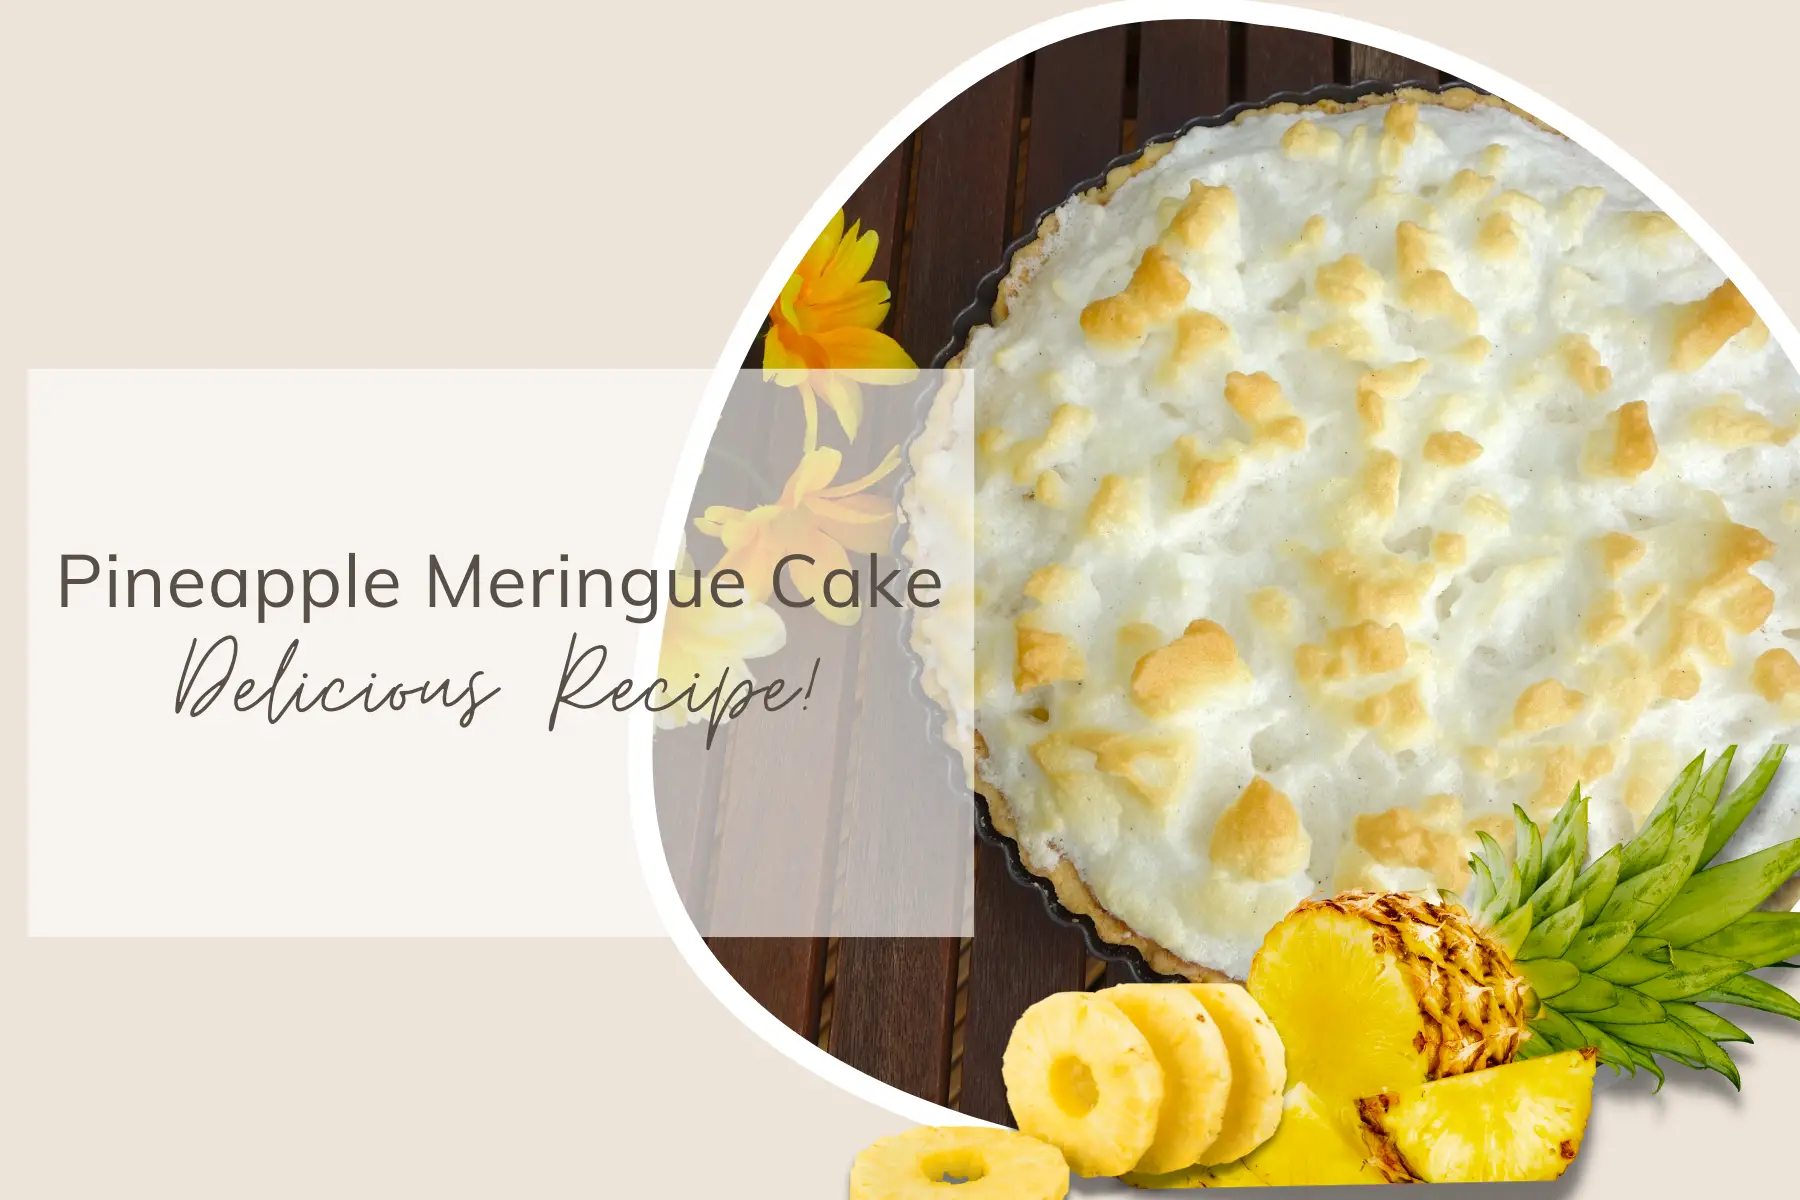 Pineapple Meringue Cake - Delicious Recipe!